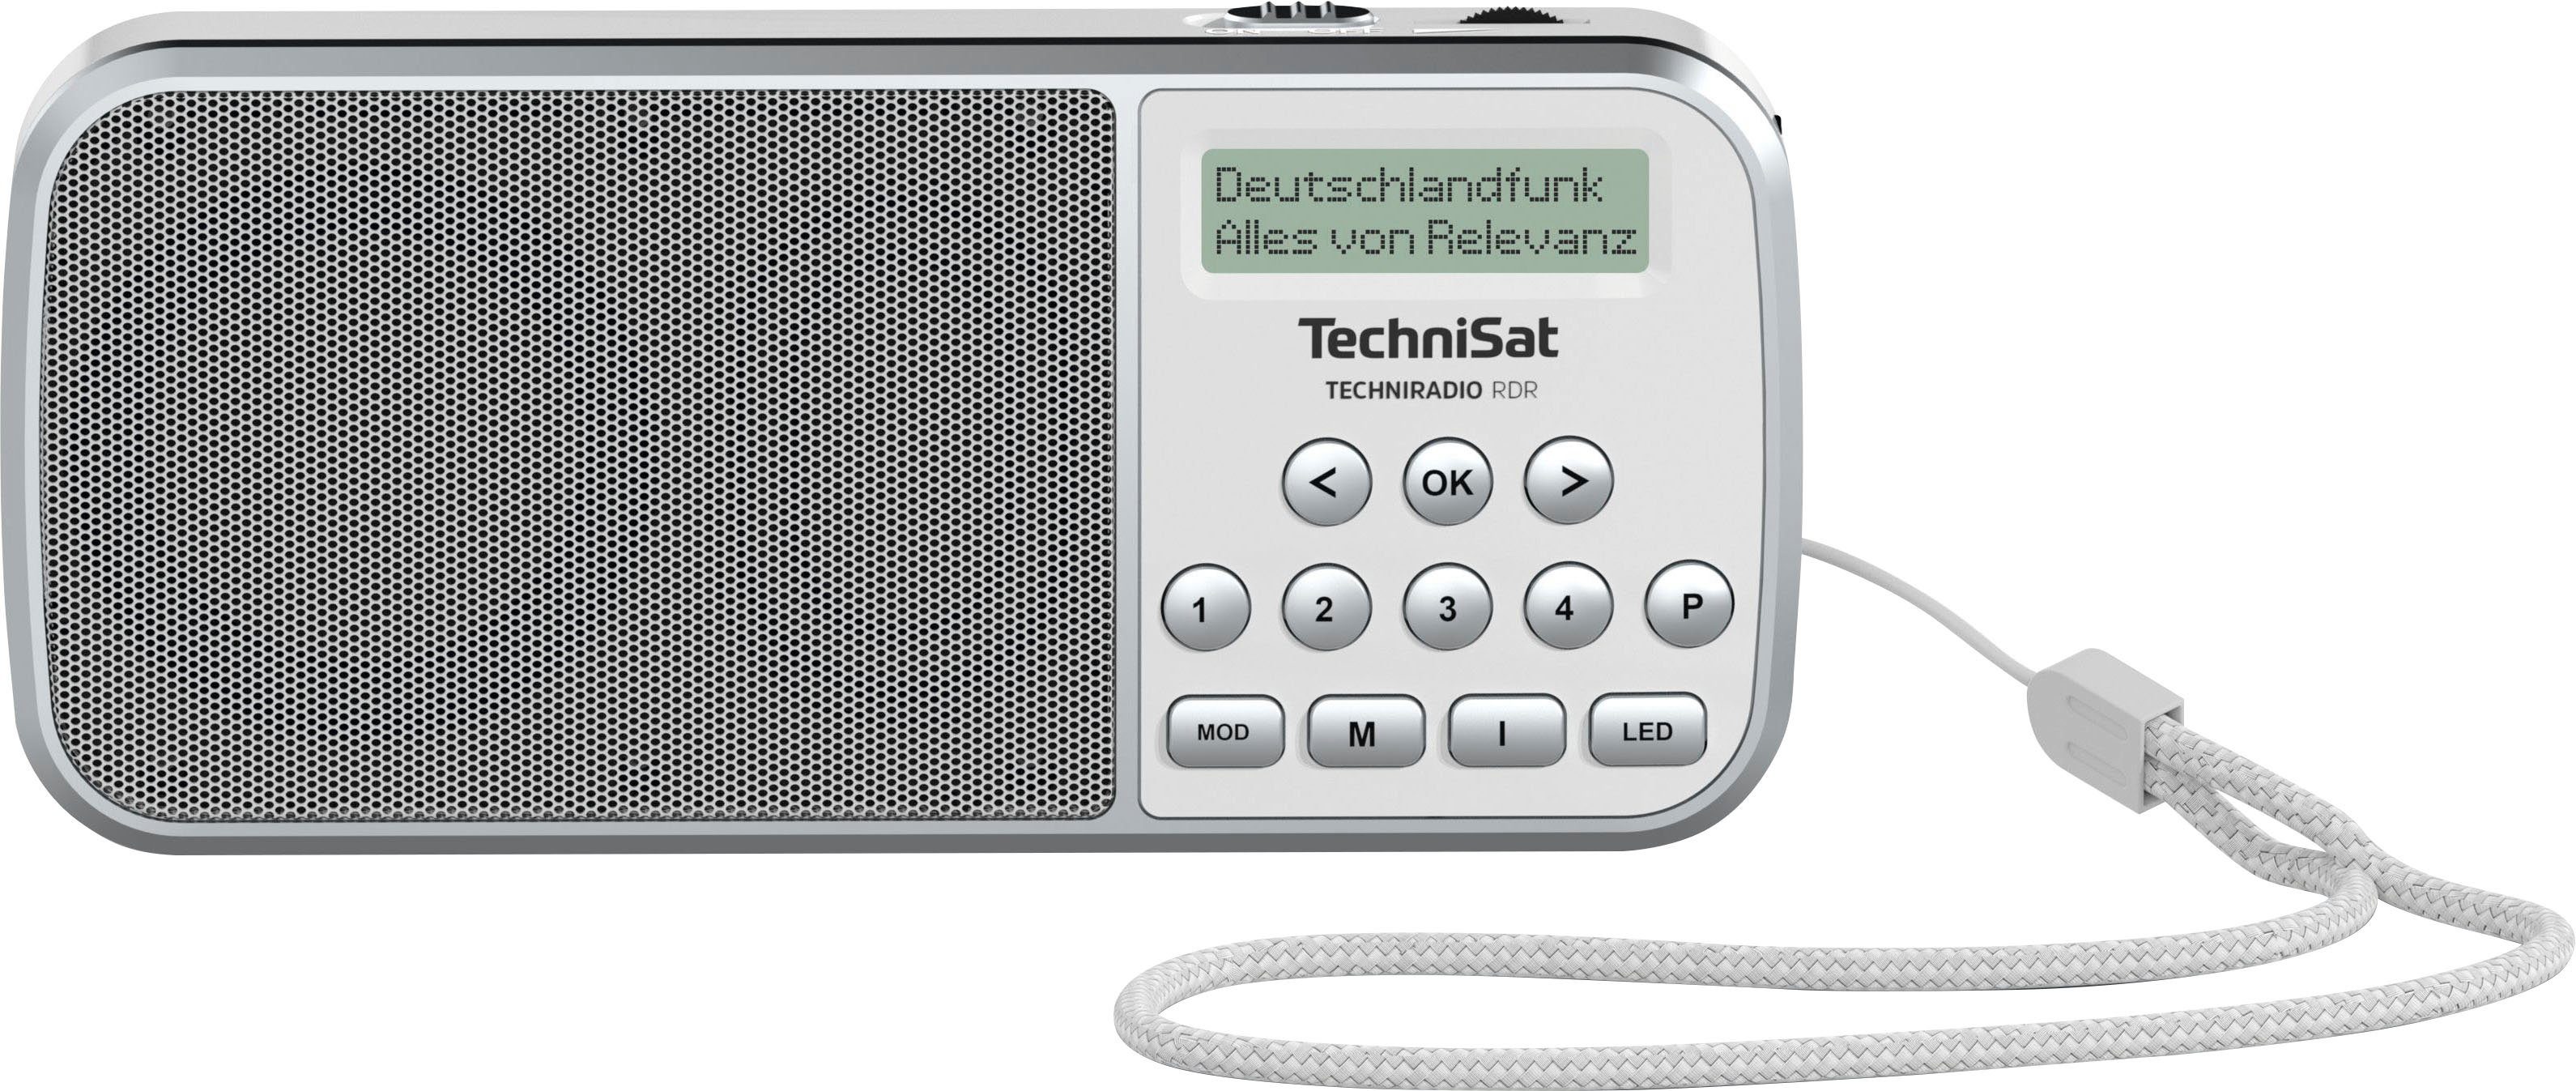 TechniSat Techniradio RDR Radio (FM-Tuner, 1 W) weiß